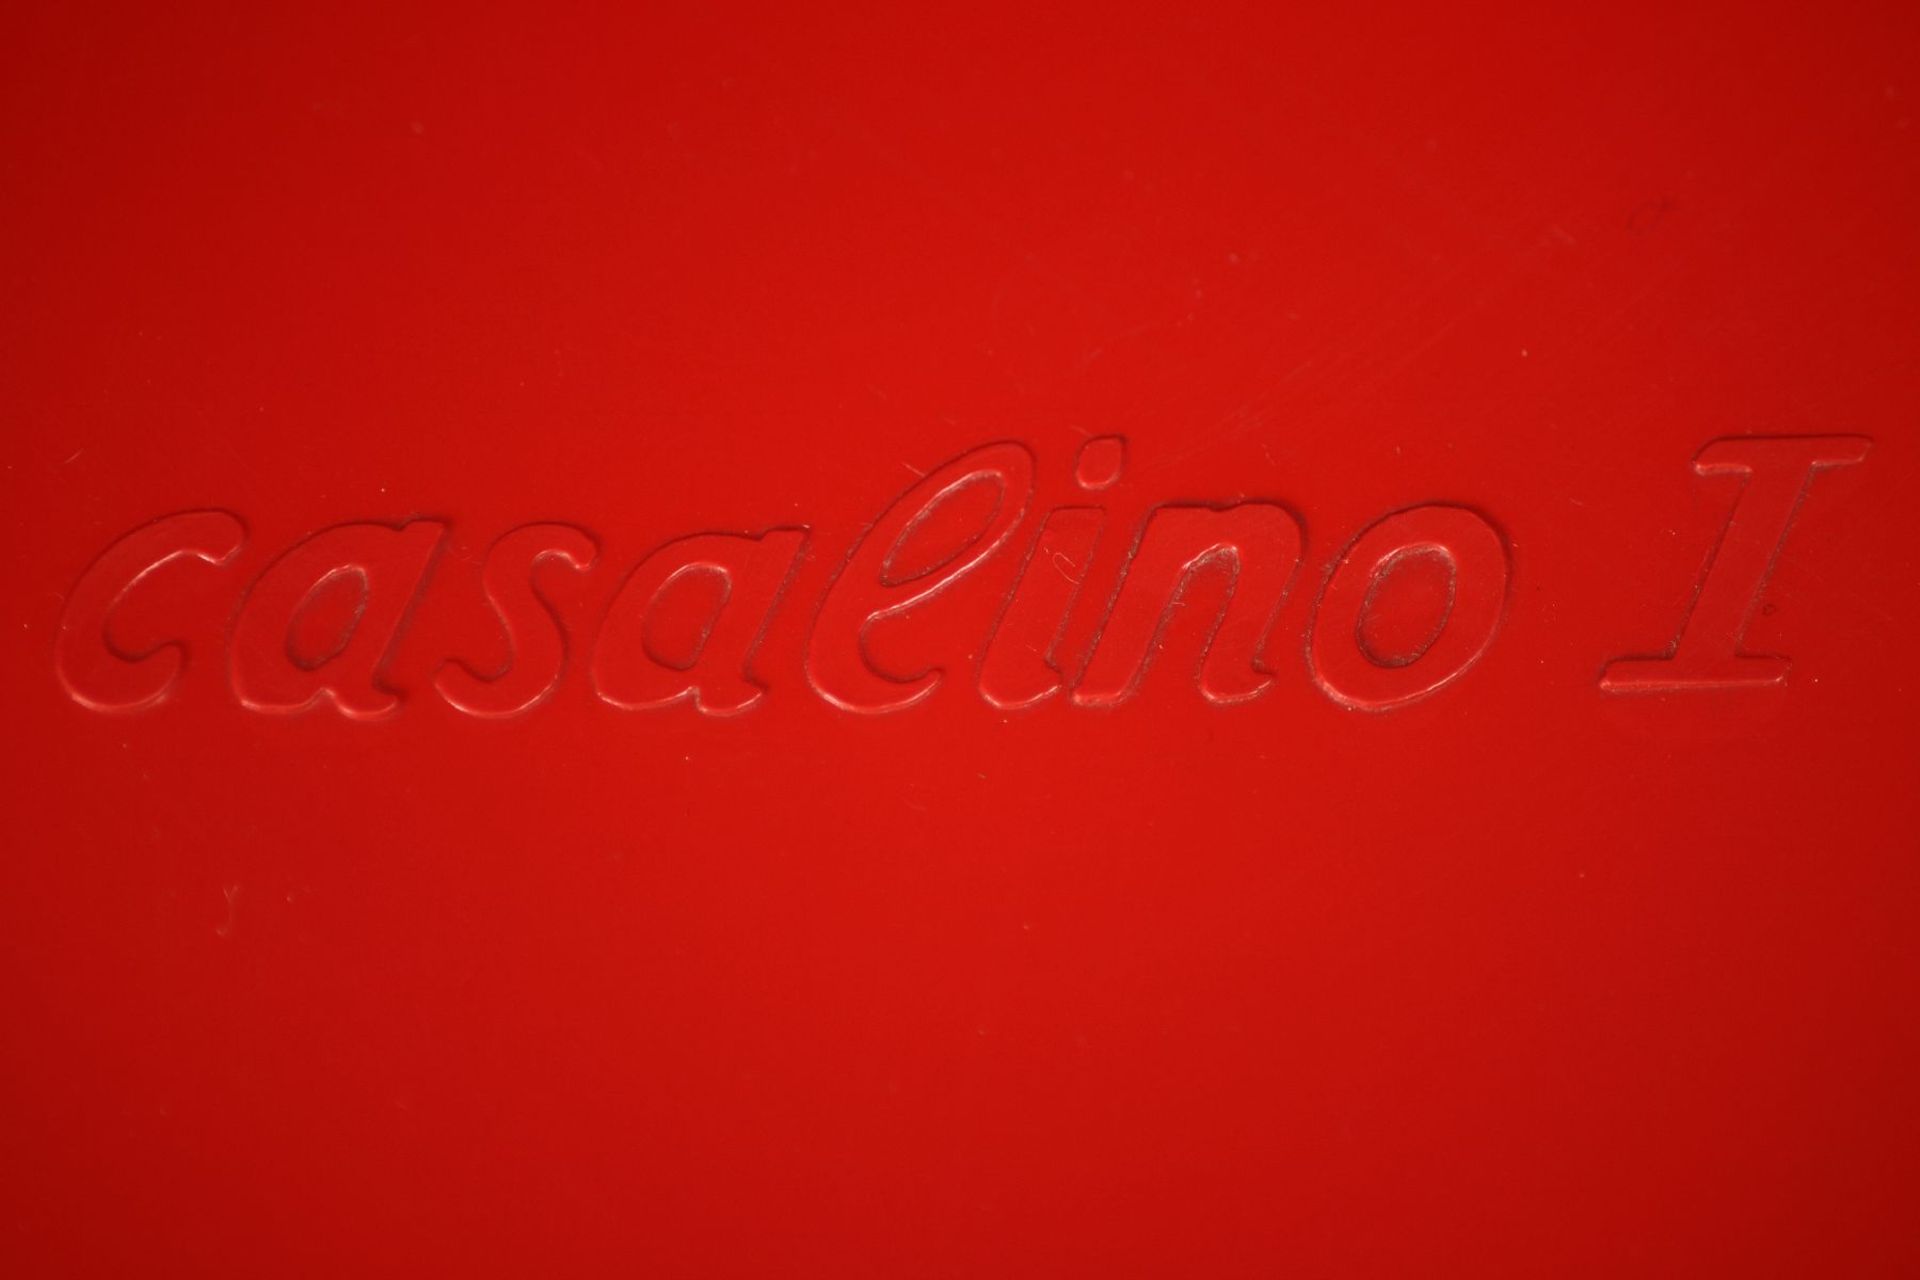 3er Set Kinderstühle "Casalino I", 1973, Hersteller: Casala, made in Western Germany, Modell: 2000/ - Bild 3 aus 4